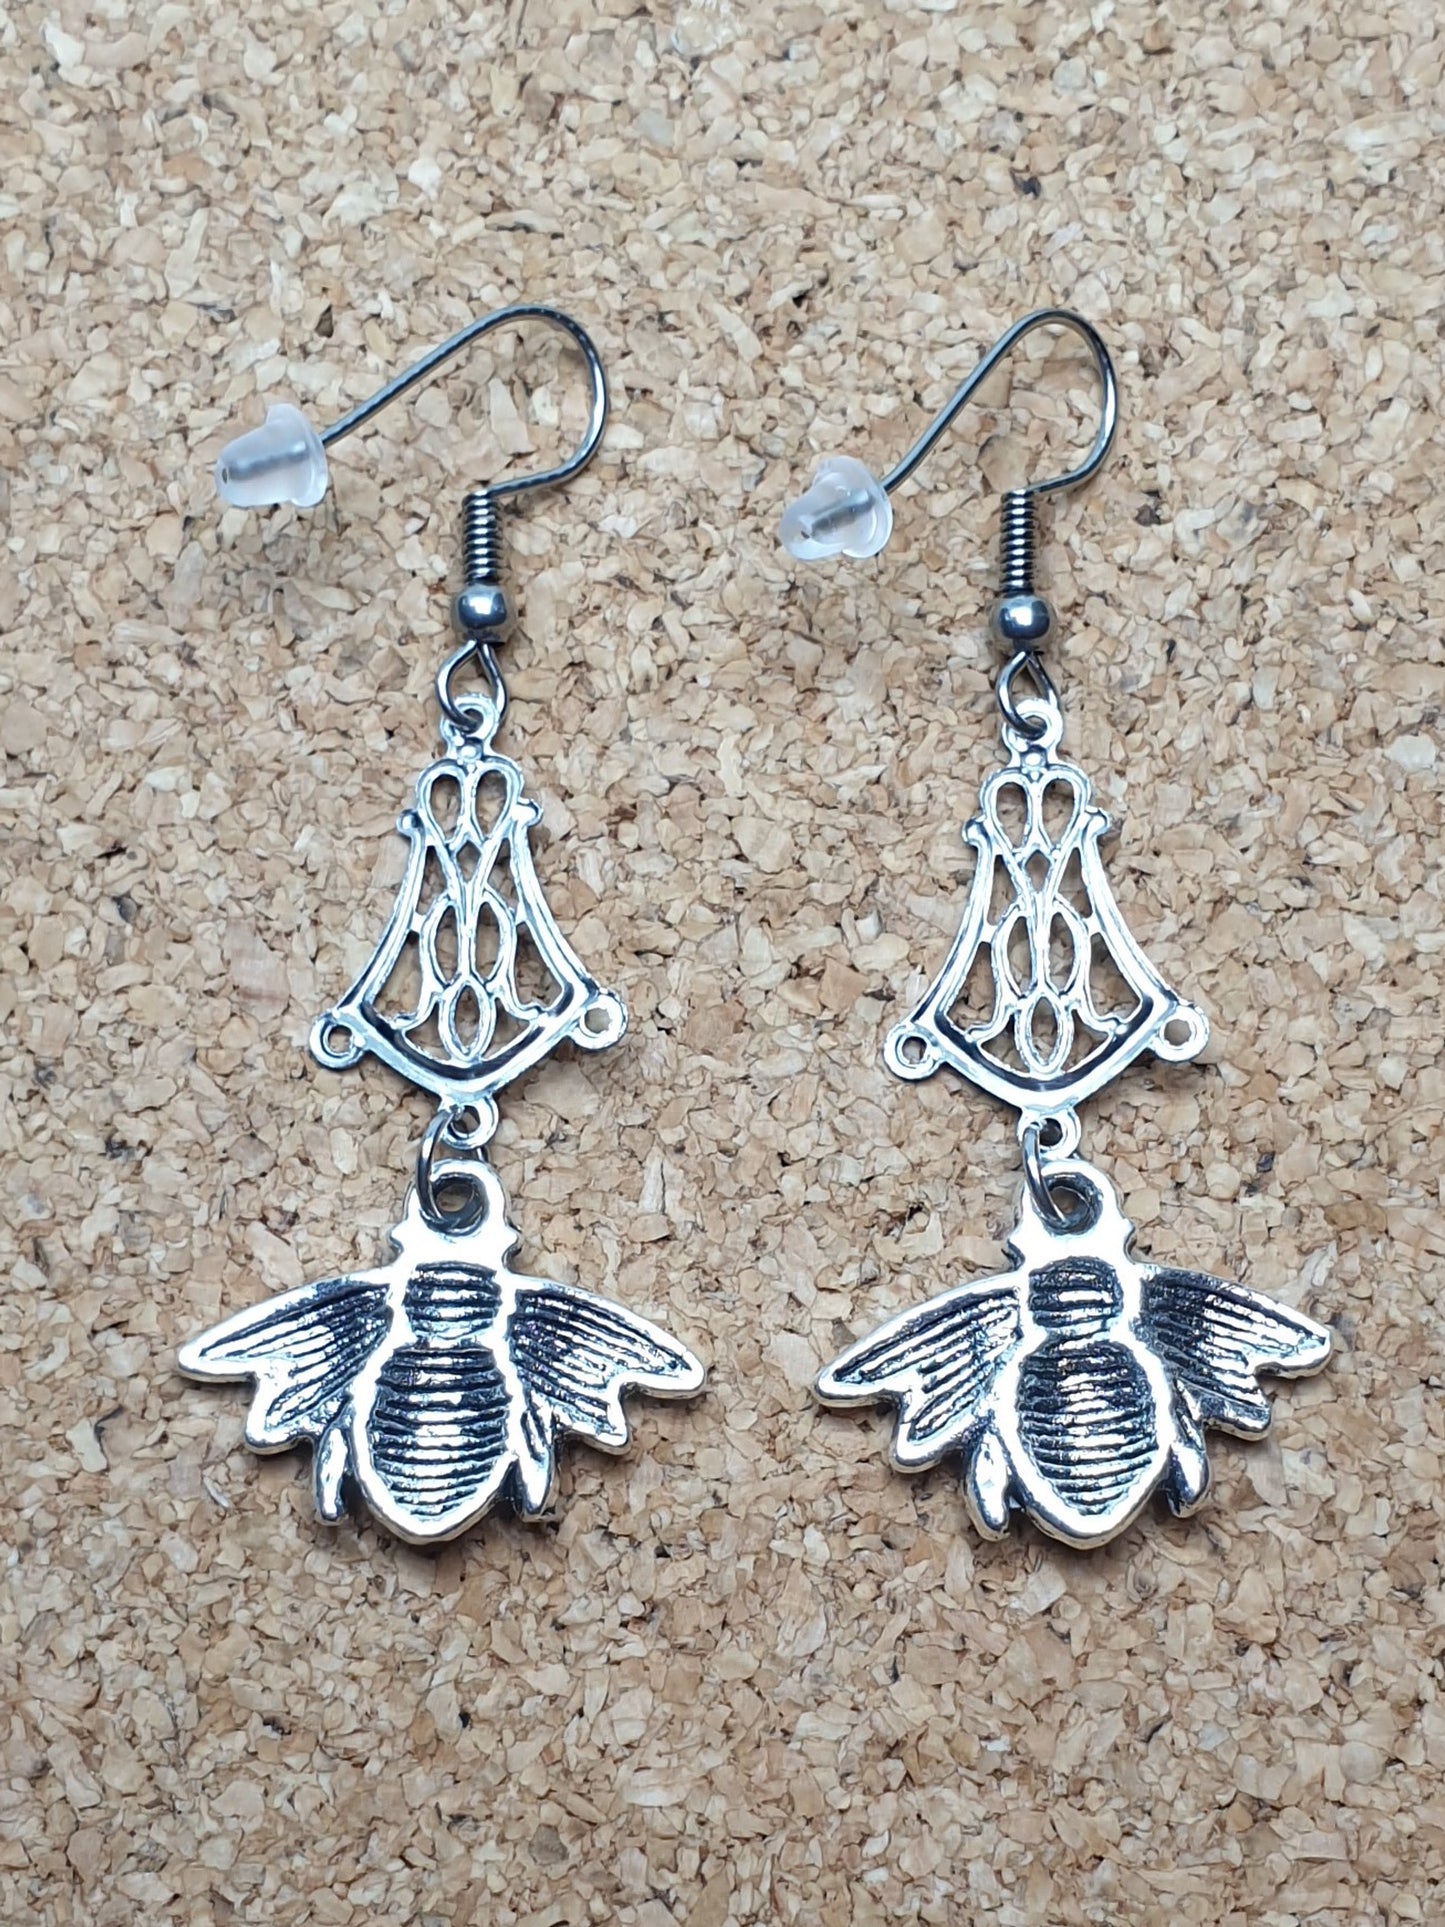 Bee on chandelier earrings